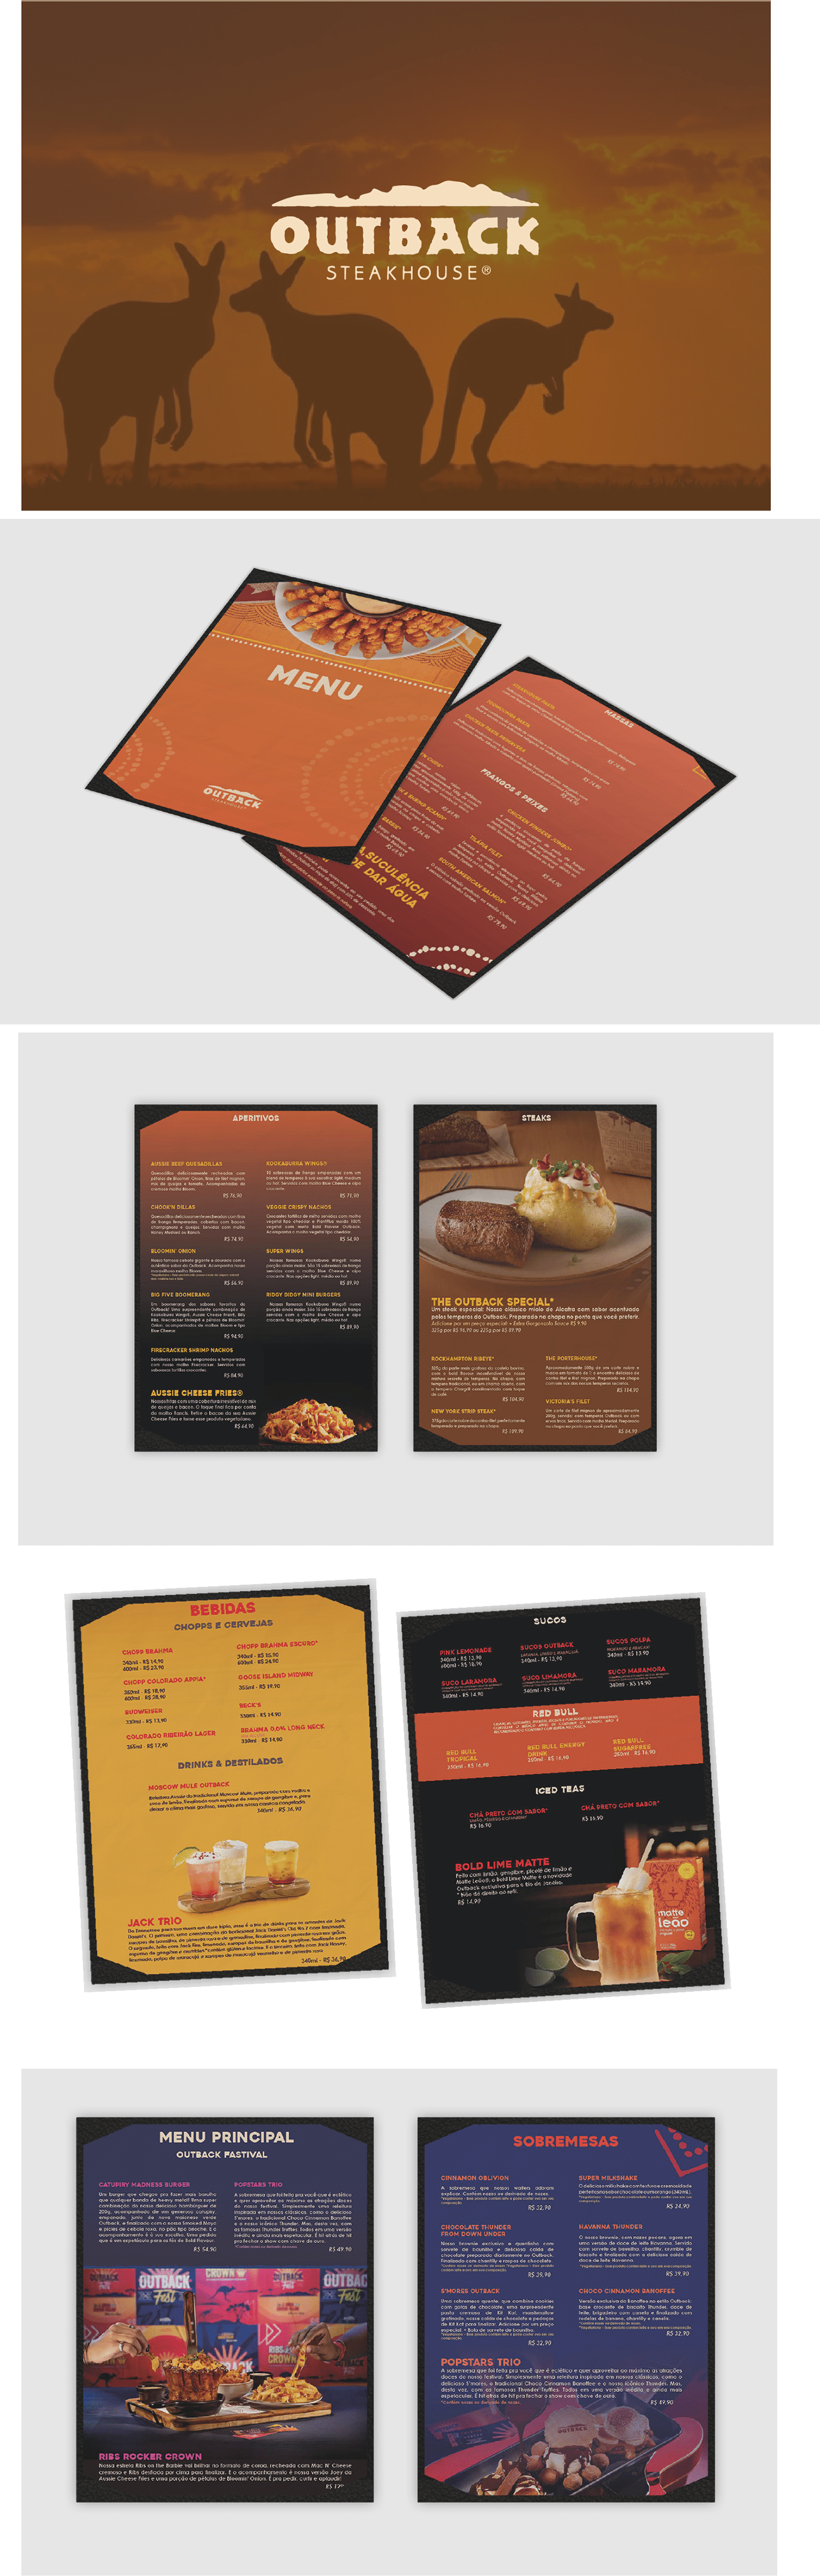 outback cardapio digital Cardápios Food  restaurant menu design culinária comida restaurante